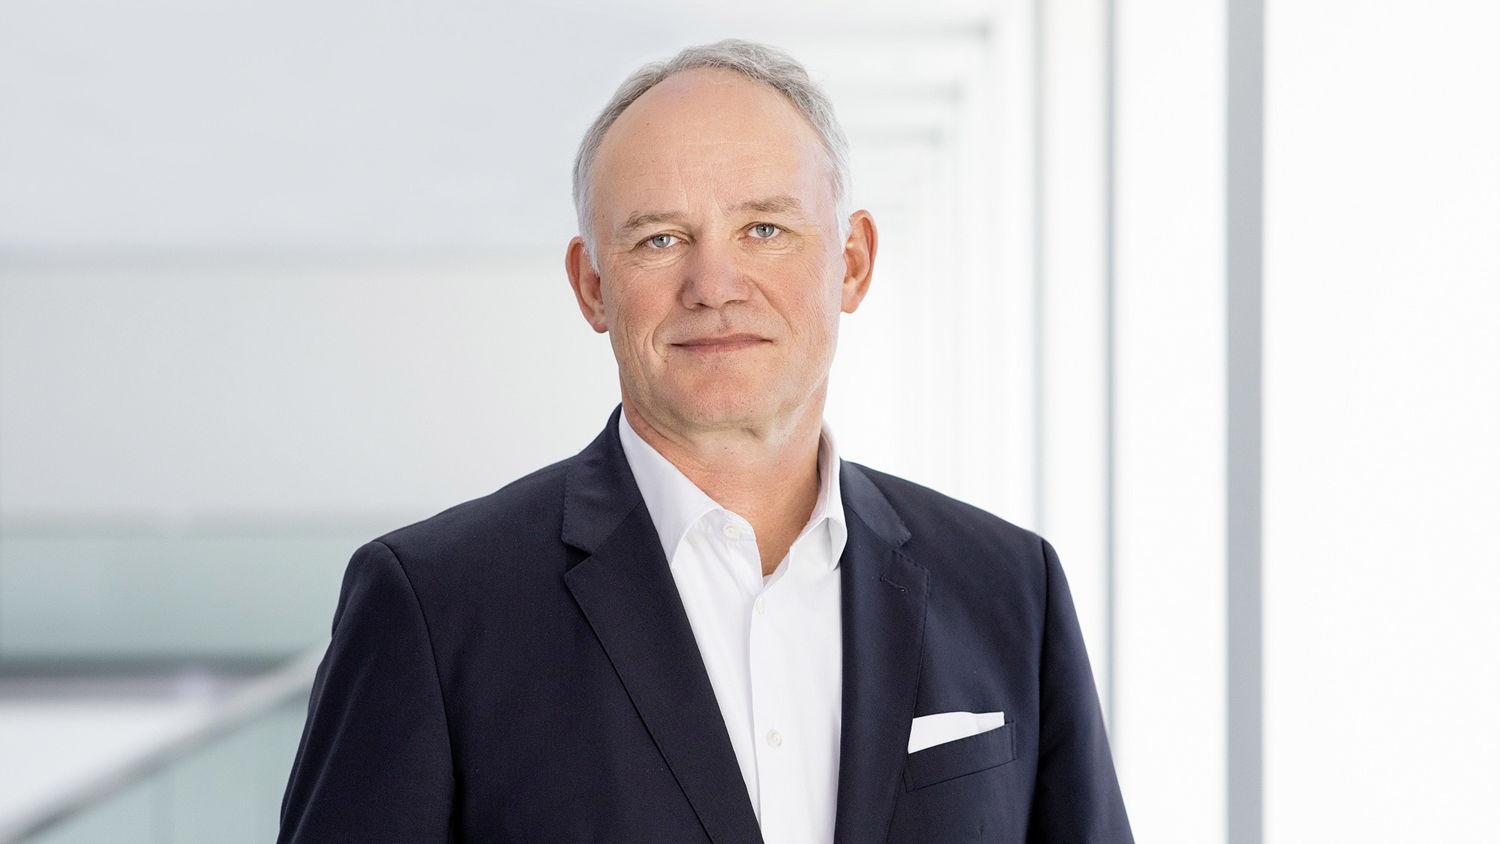 Michael Jost afirma: “Volkswagen tiene importancia global y está conectado con una responsabilidad global”.